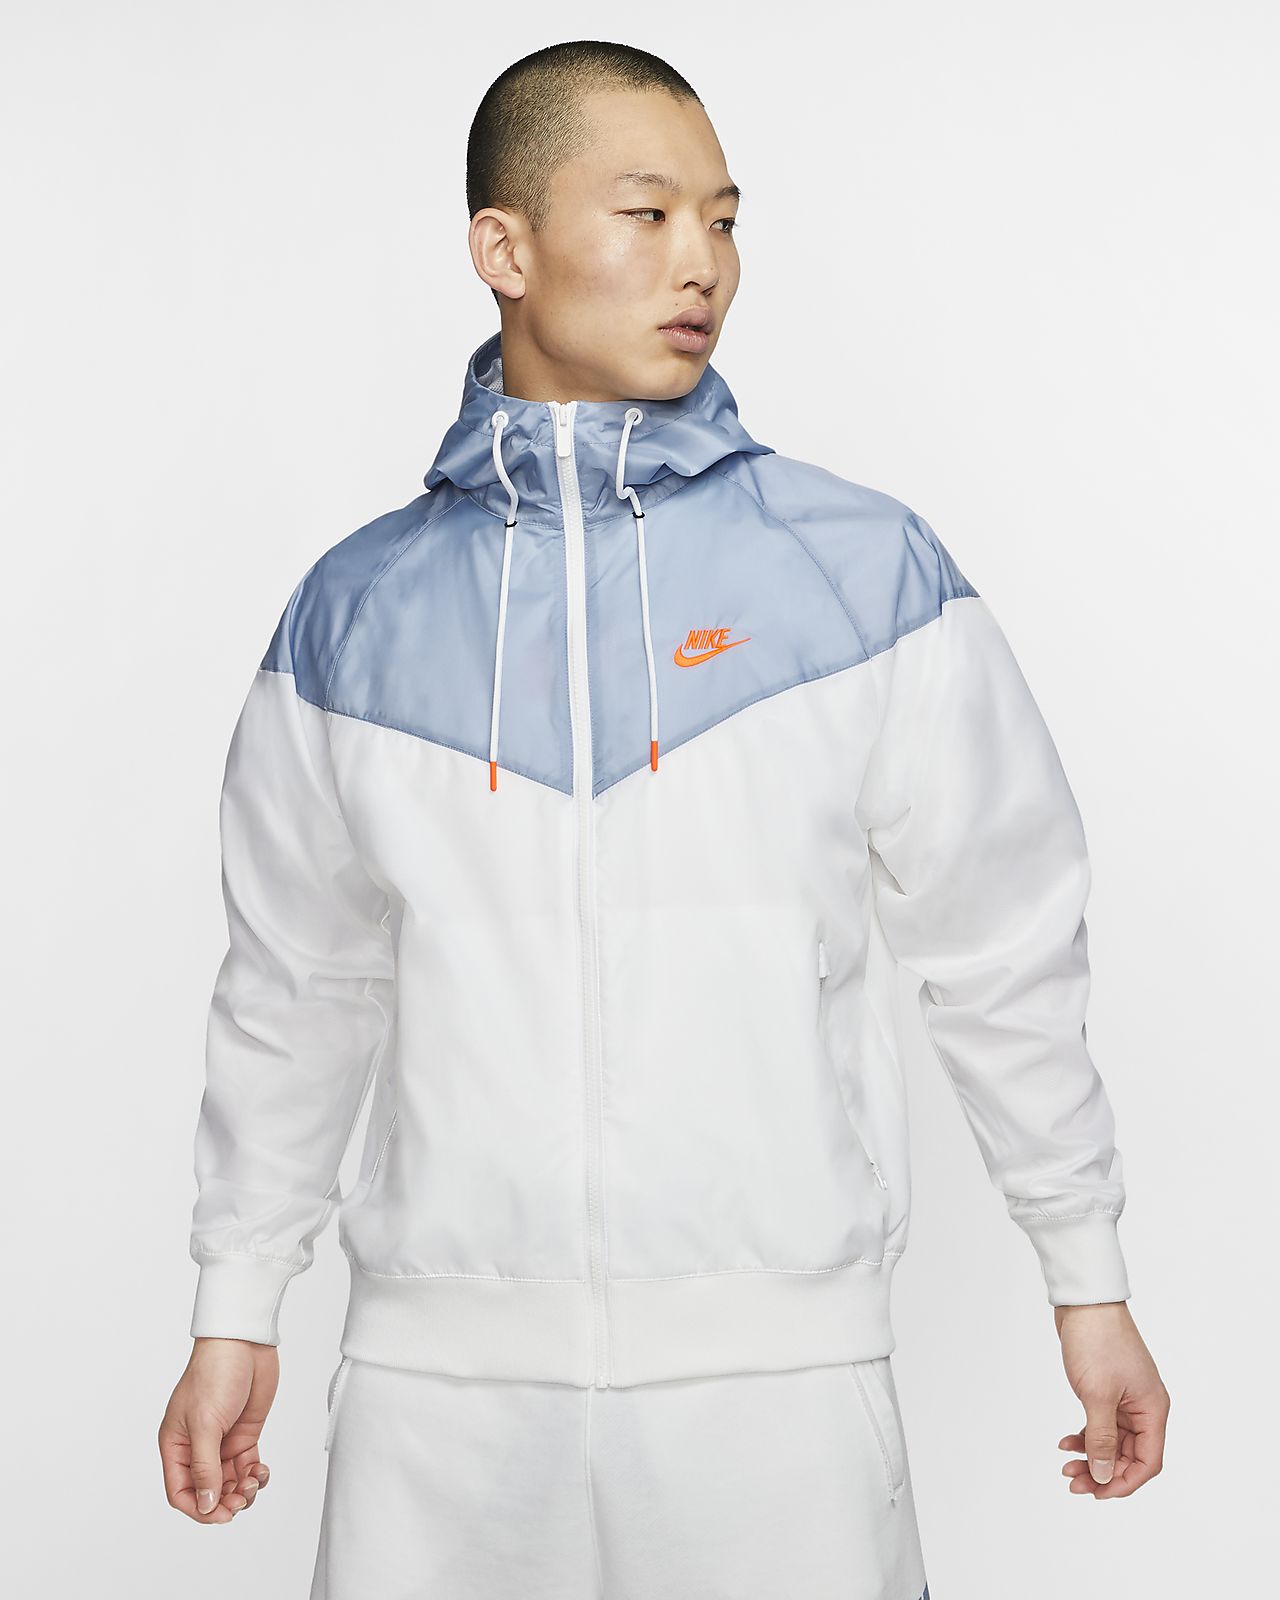 Download Nike Sportswear Windrunner Men's Hooded Jacket. Nike SG